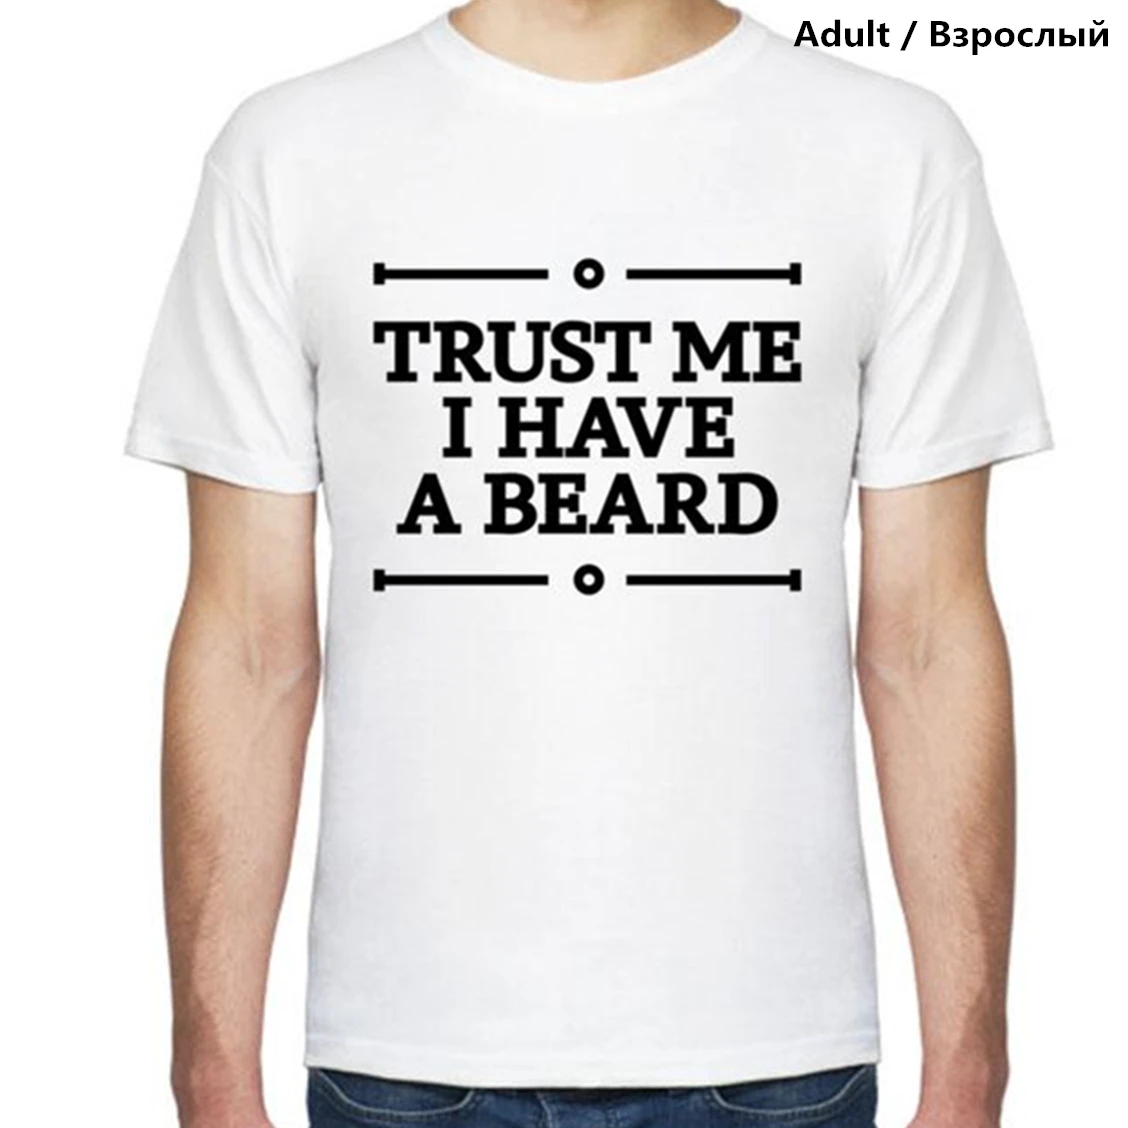 Футболка Trust Me детские топы с бородой семейная одежда Молодежная мягкая футболка